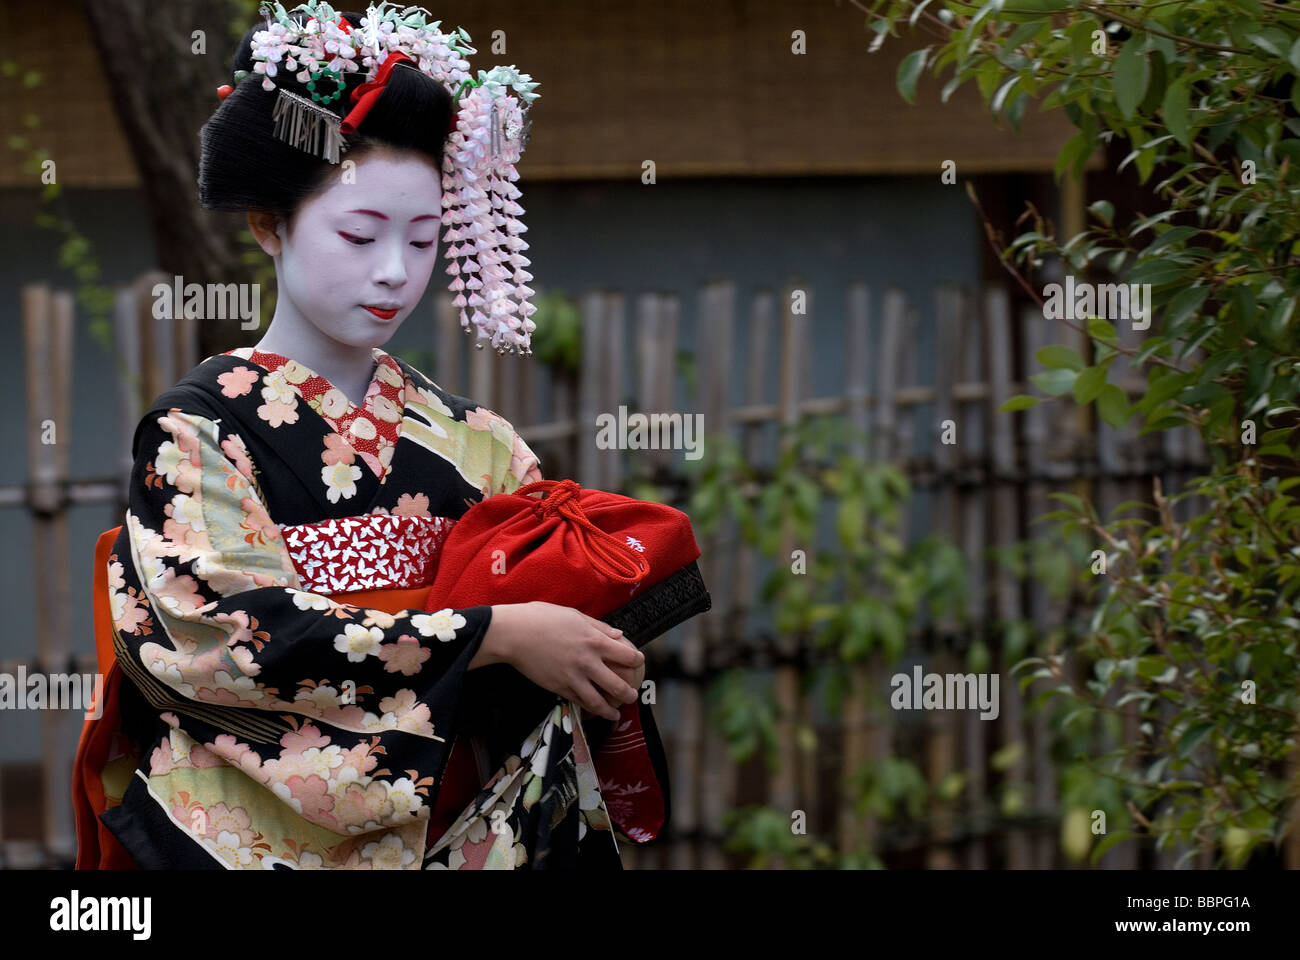 Ein Lehrling Geisha oder Maiko, zu Fuß entlang einer Gasse in Kyotos Shimbashi Stadtteil Gion. Stockfoto